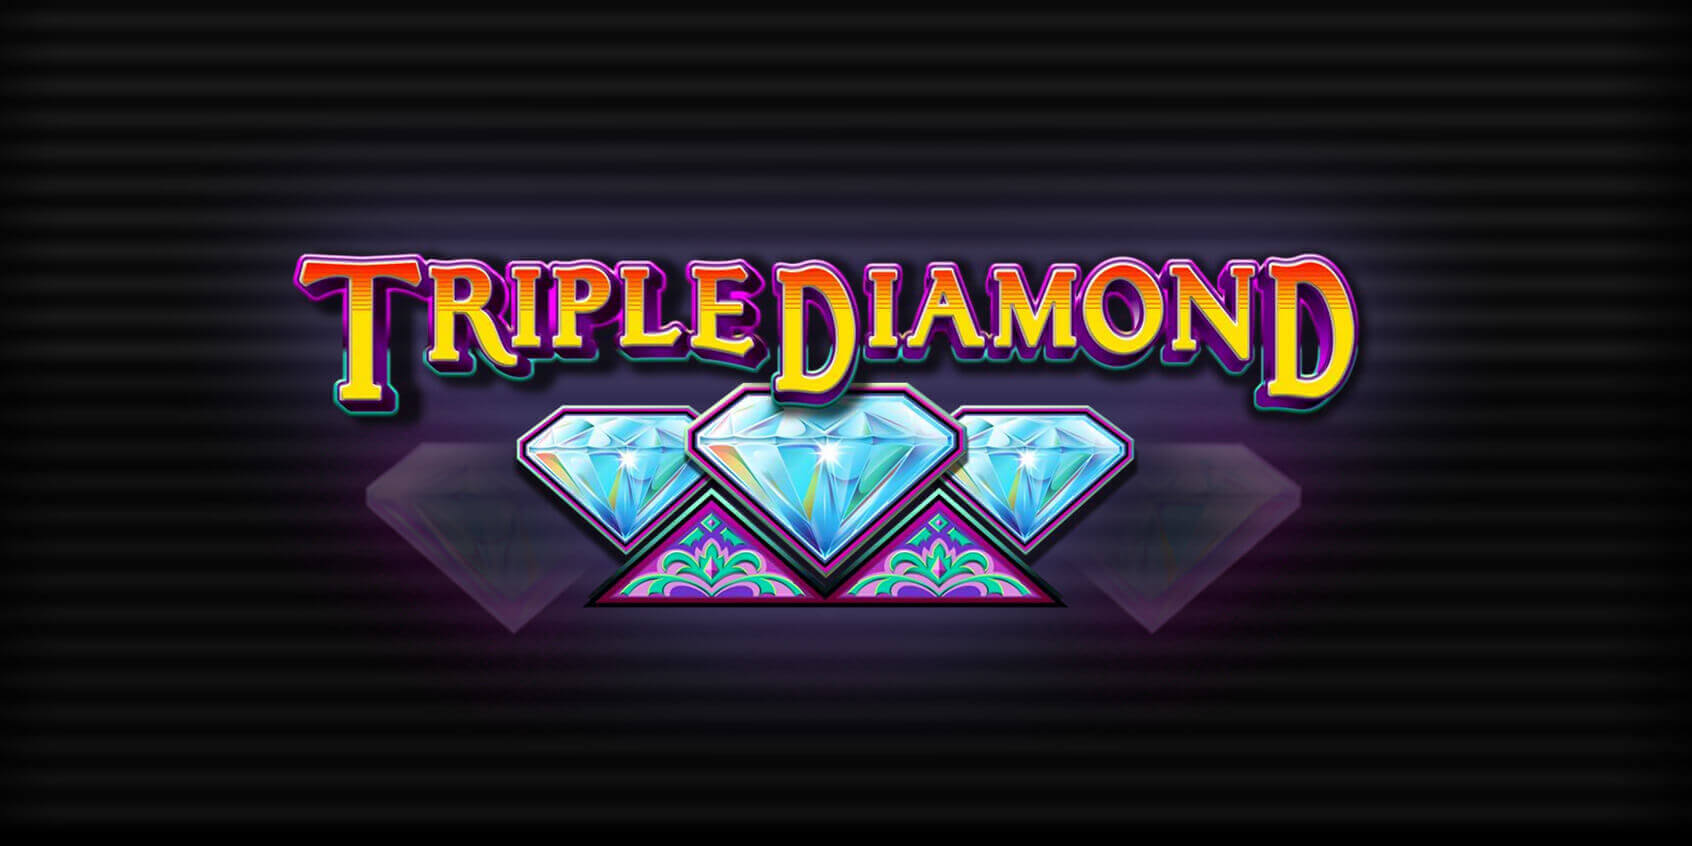 play triple diamond slots for free